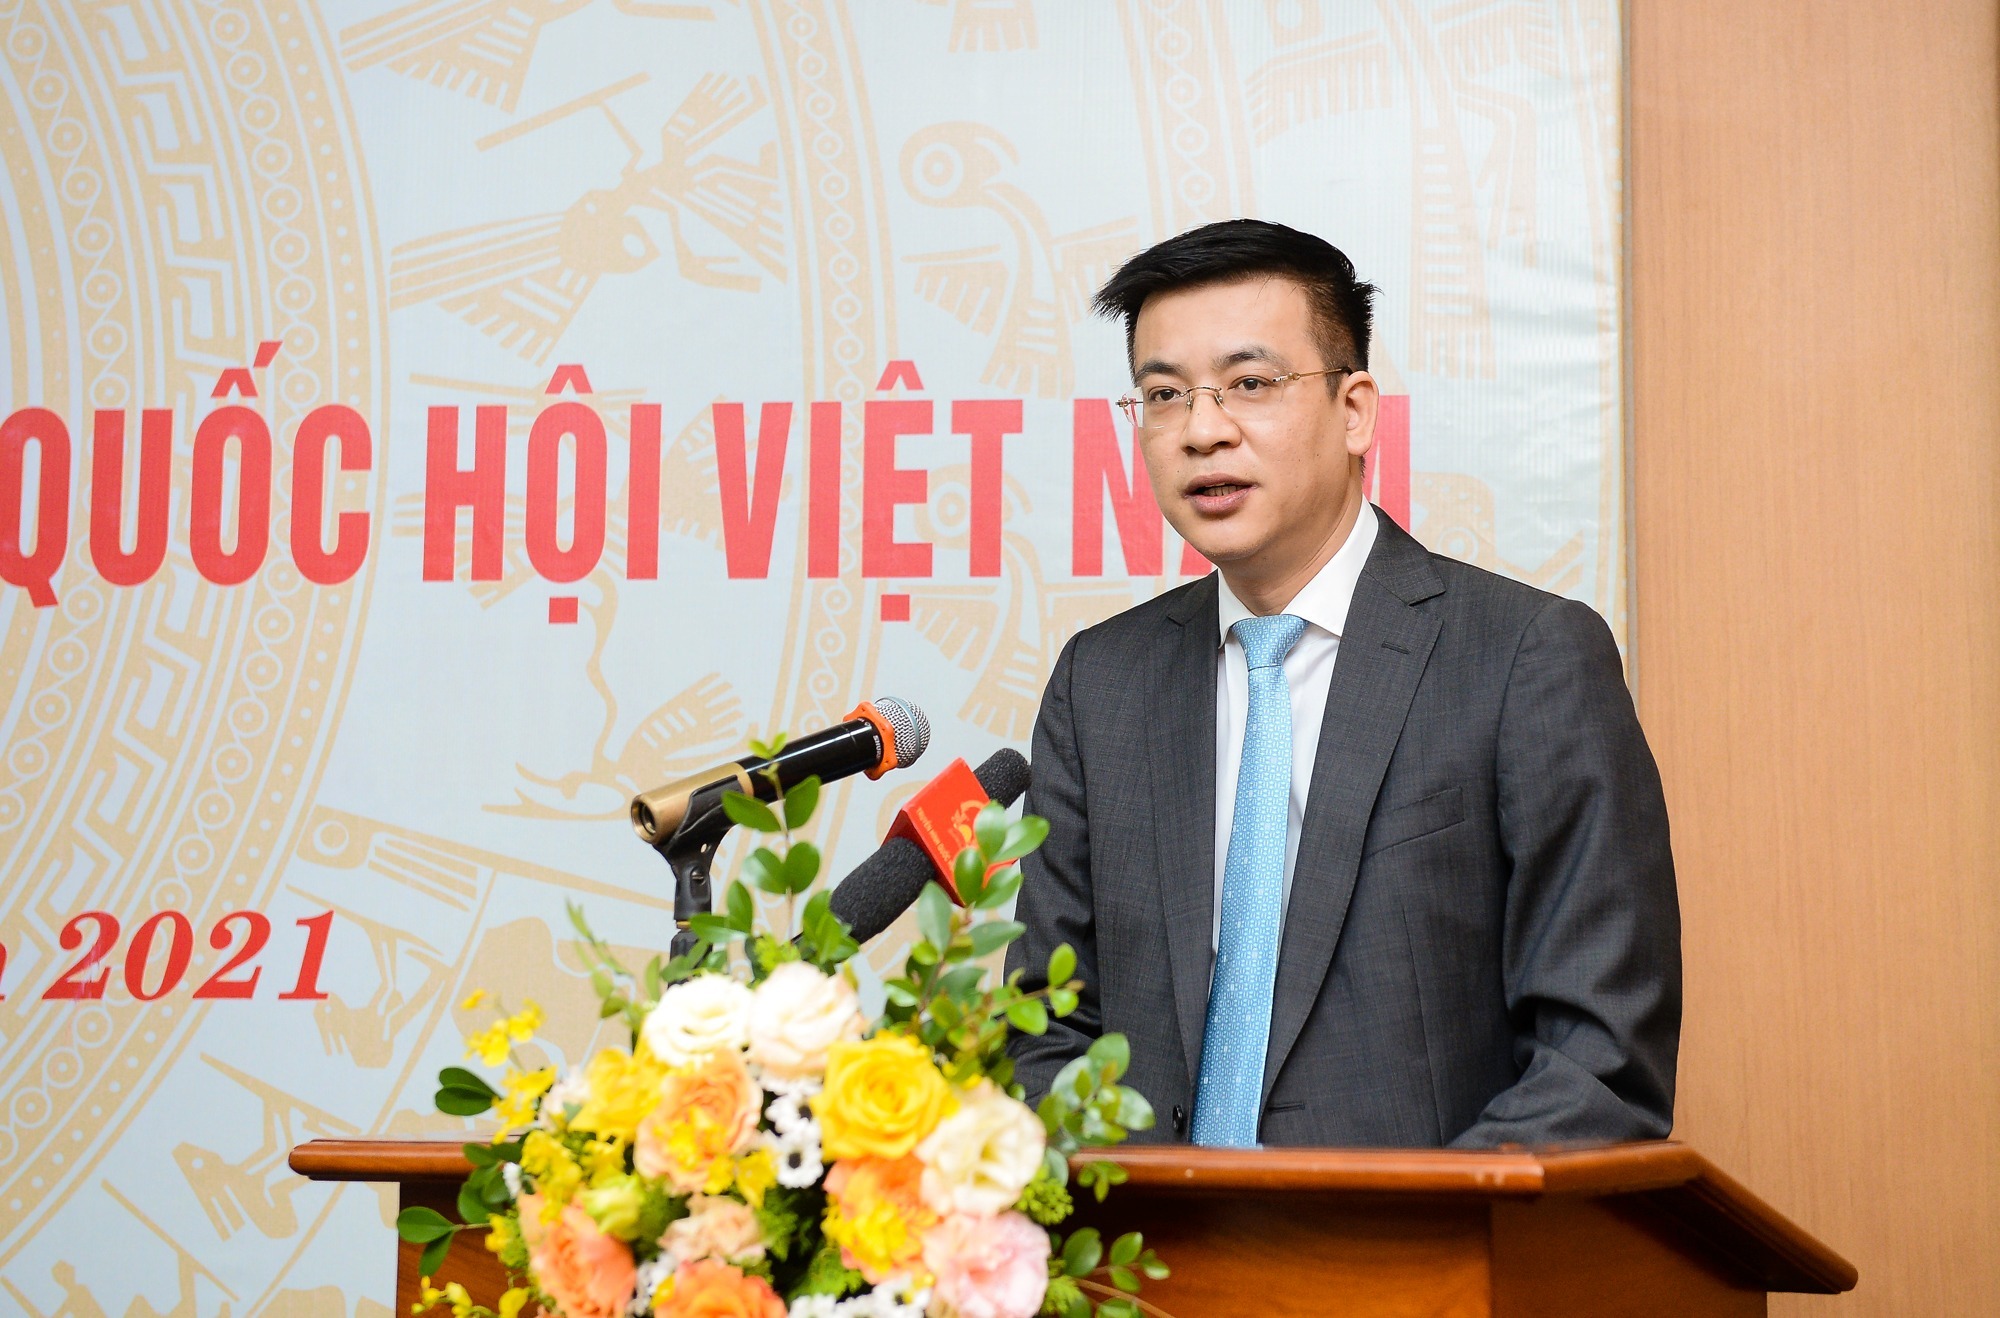 BTV Quang Minh được bổ nhiệm làm Tổng Giám đốc Truyền hình Quốc hội